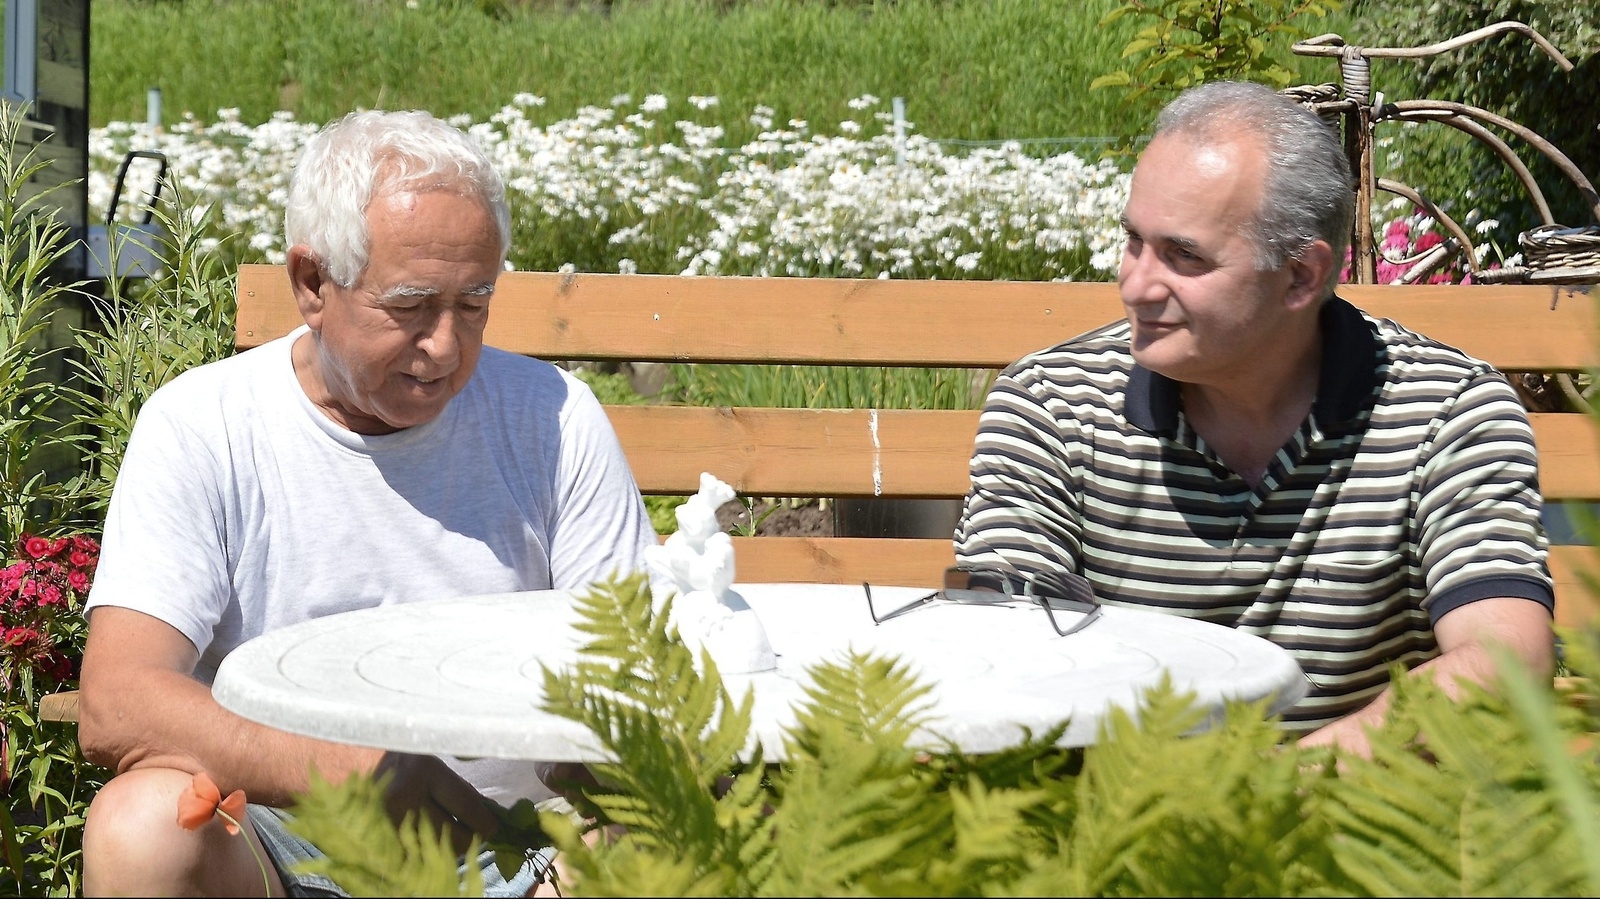 Georgios Dellios och Georgios Dalakas diskuterar grekisk politik i Vallens koloniområde. Båda ser pessimistiskt på deras forna hemlands framtid. De har ingen möjlighet att delta i söndagens folkomröstning här i Sverige. Foto: Anders Thall